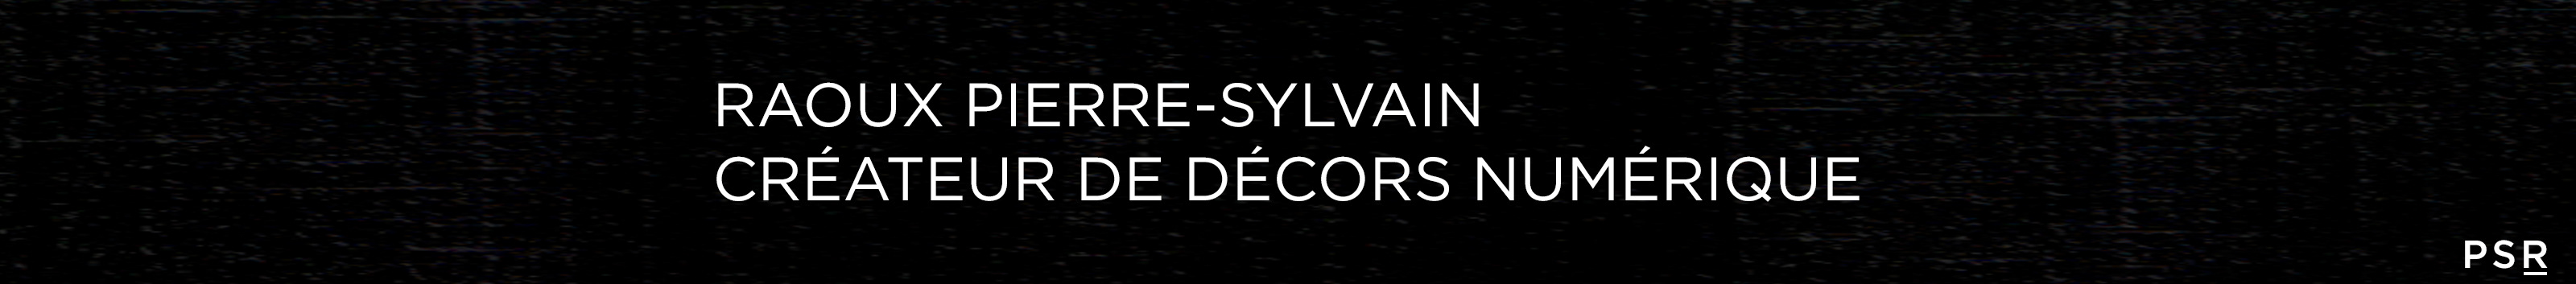 Pierre-Sylvain Raoux's profile banner